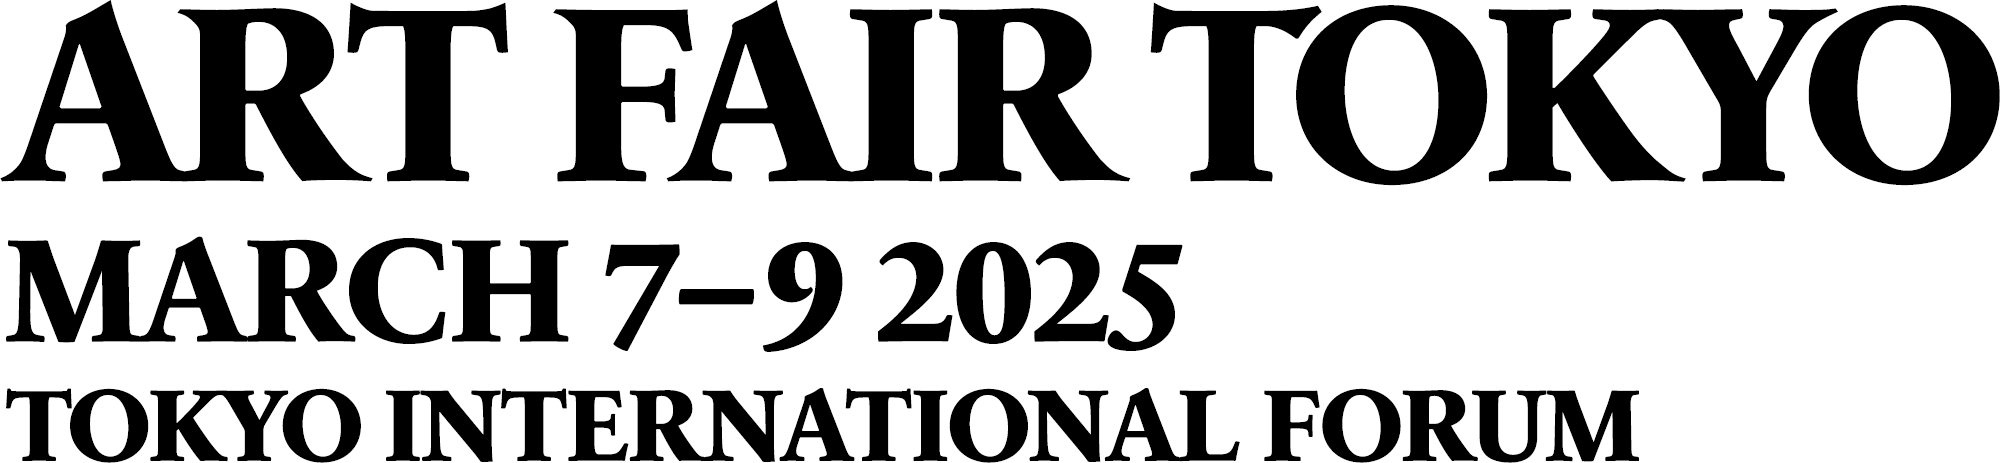 Logo 2025 pc